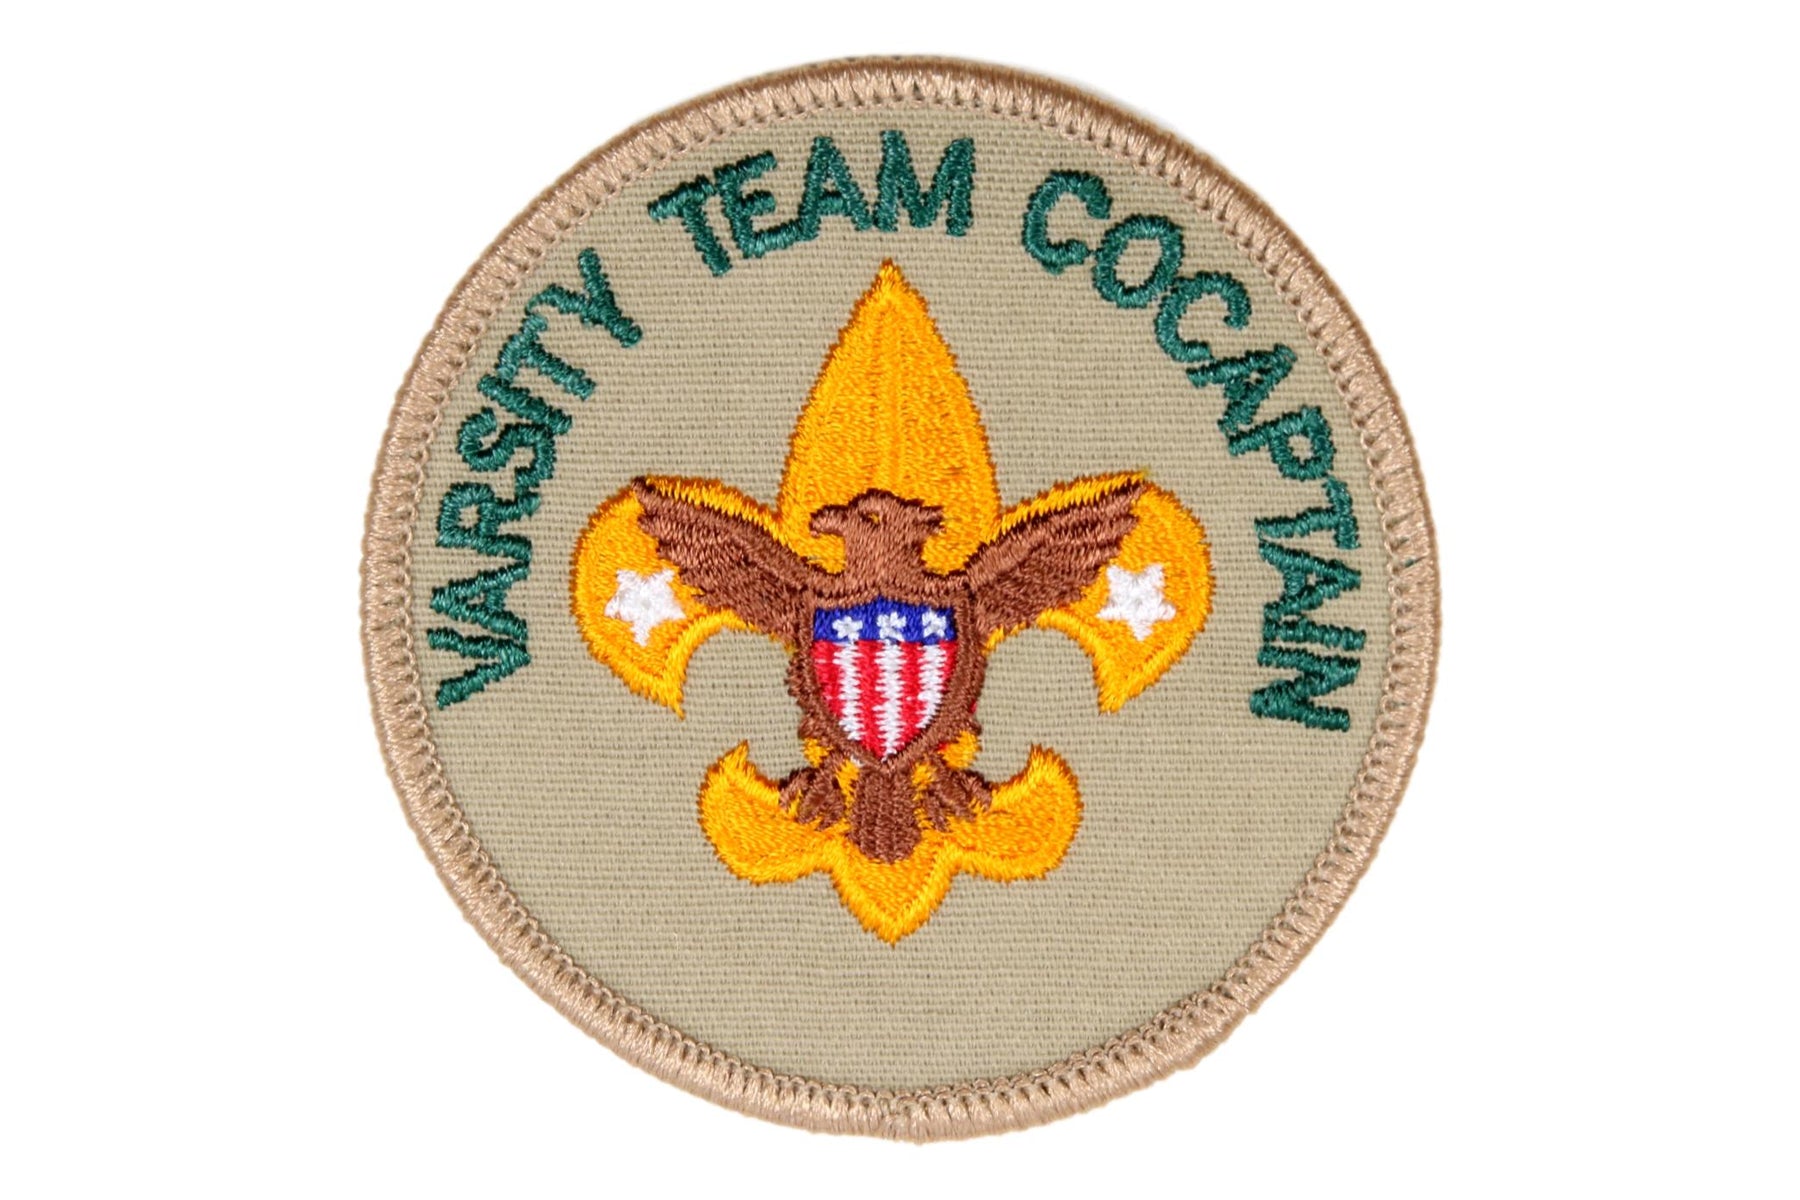 Varsity Team CoCaptain Patch